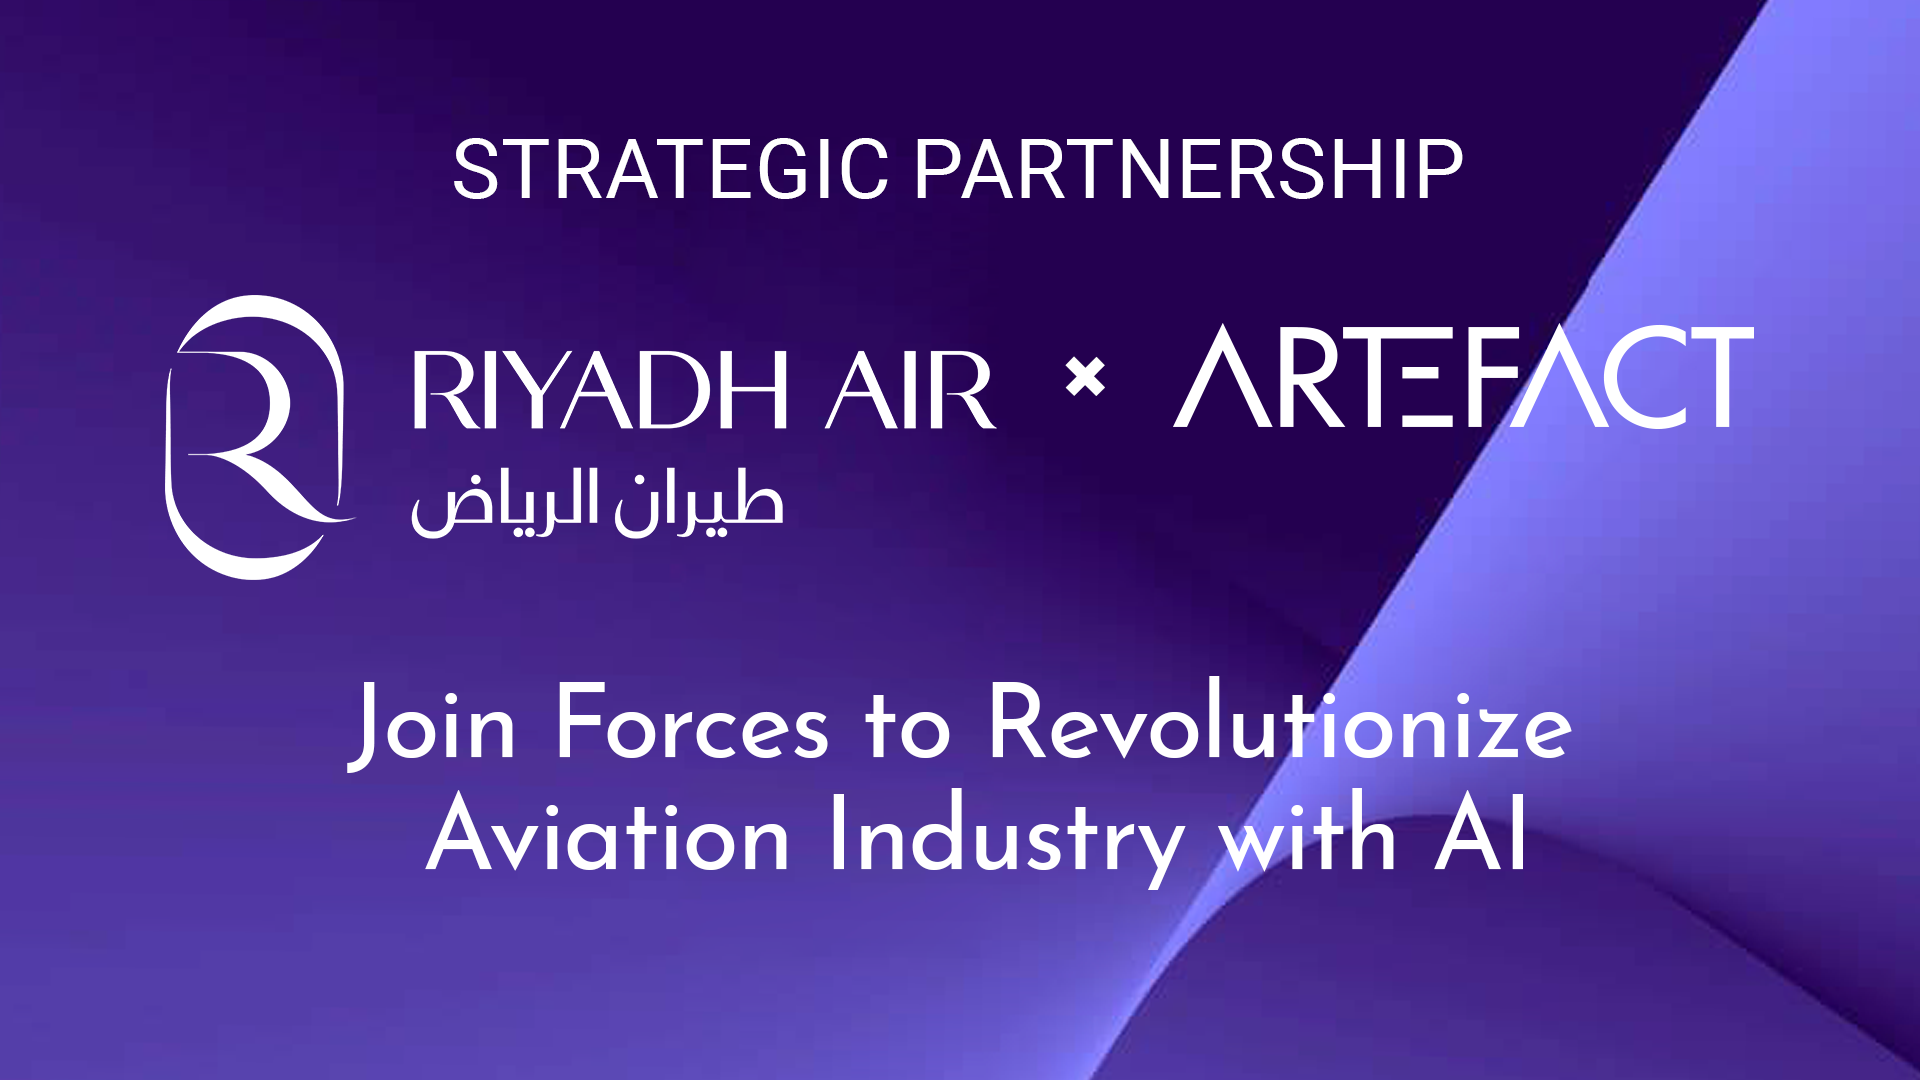 Artefact携手Riyadh Air将以AI革新旅游航空业